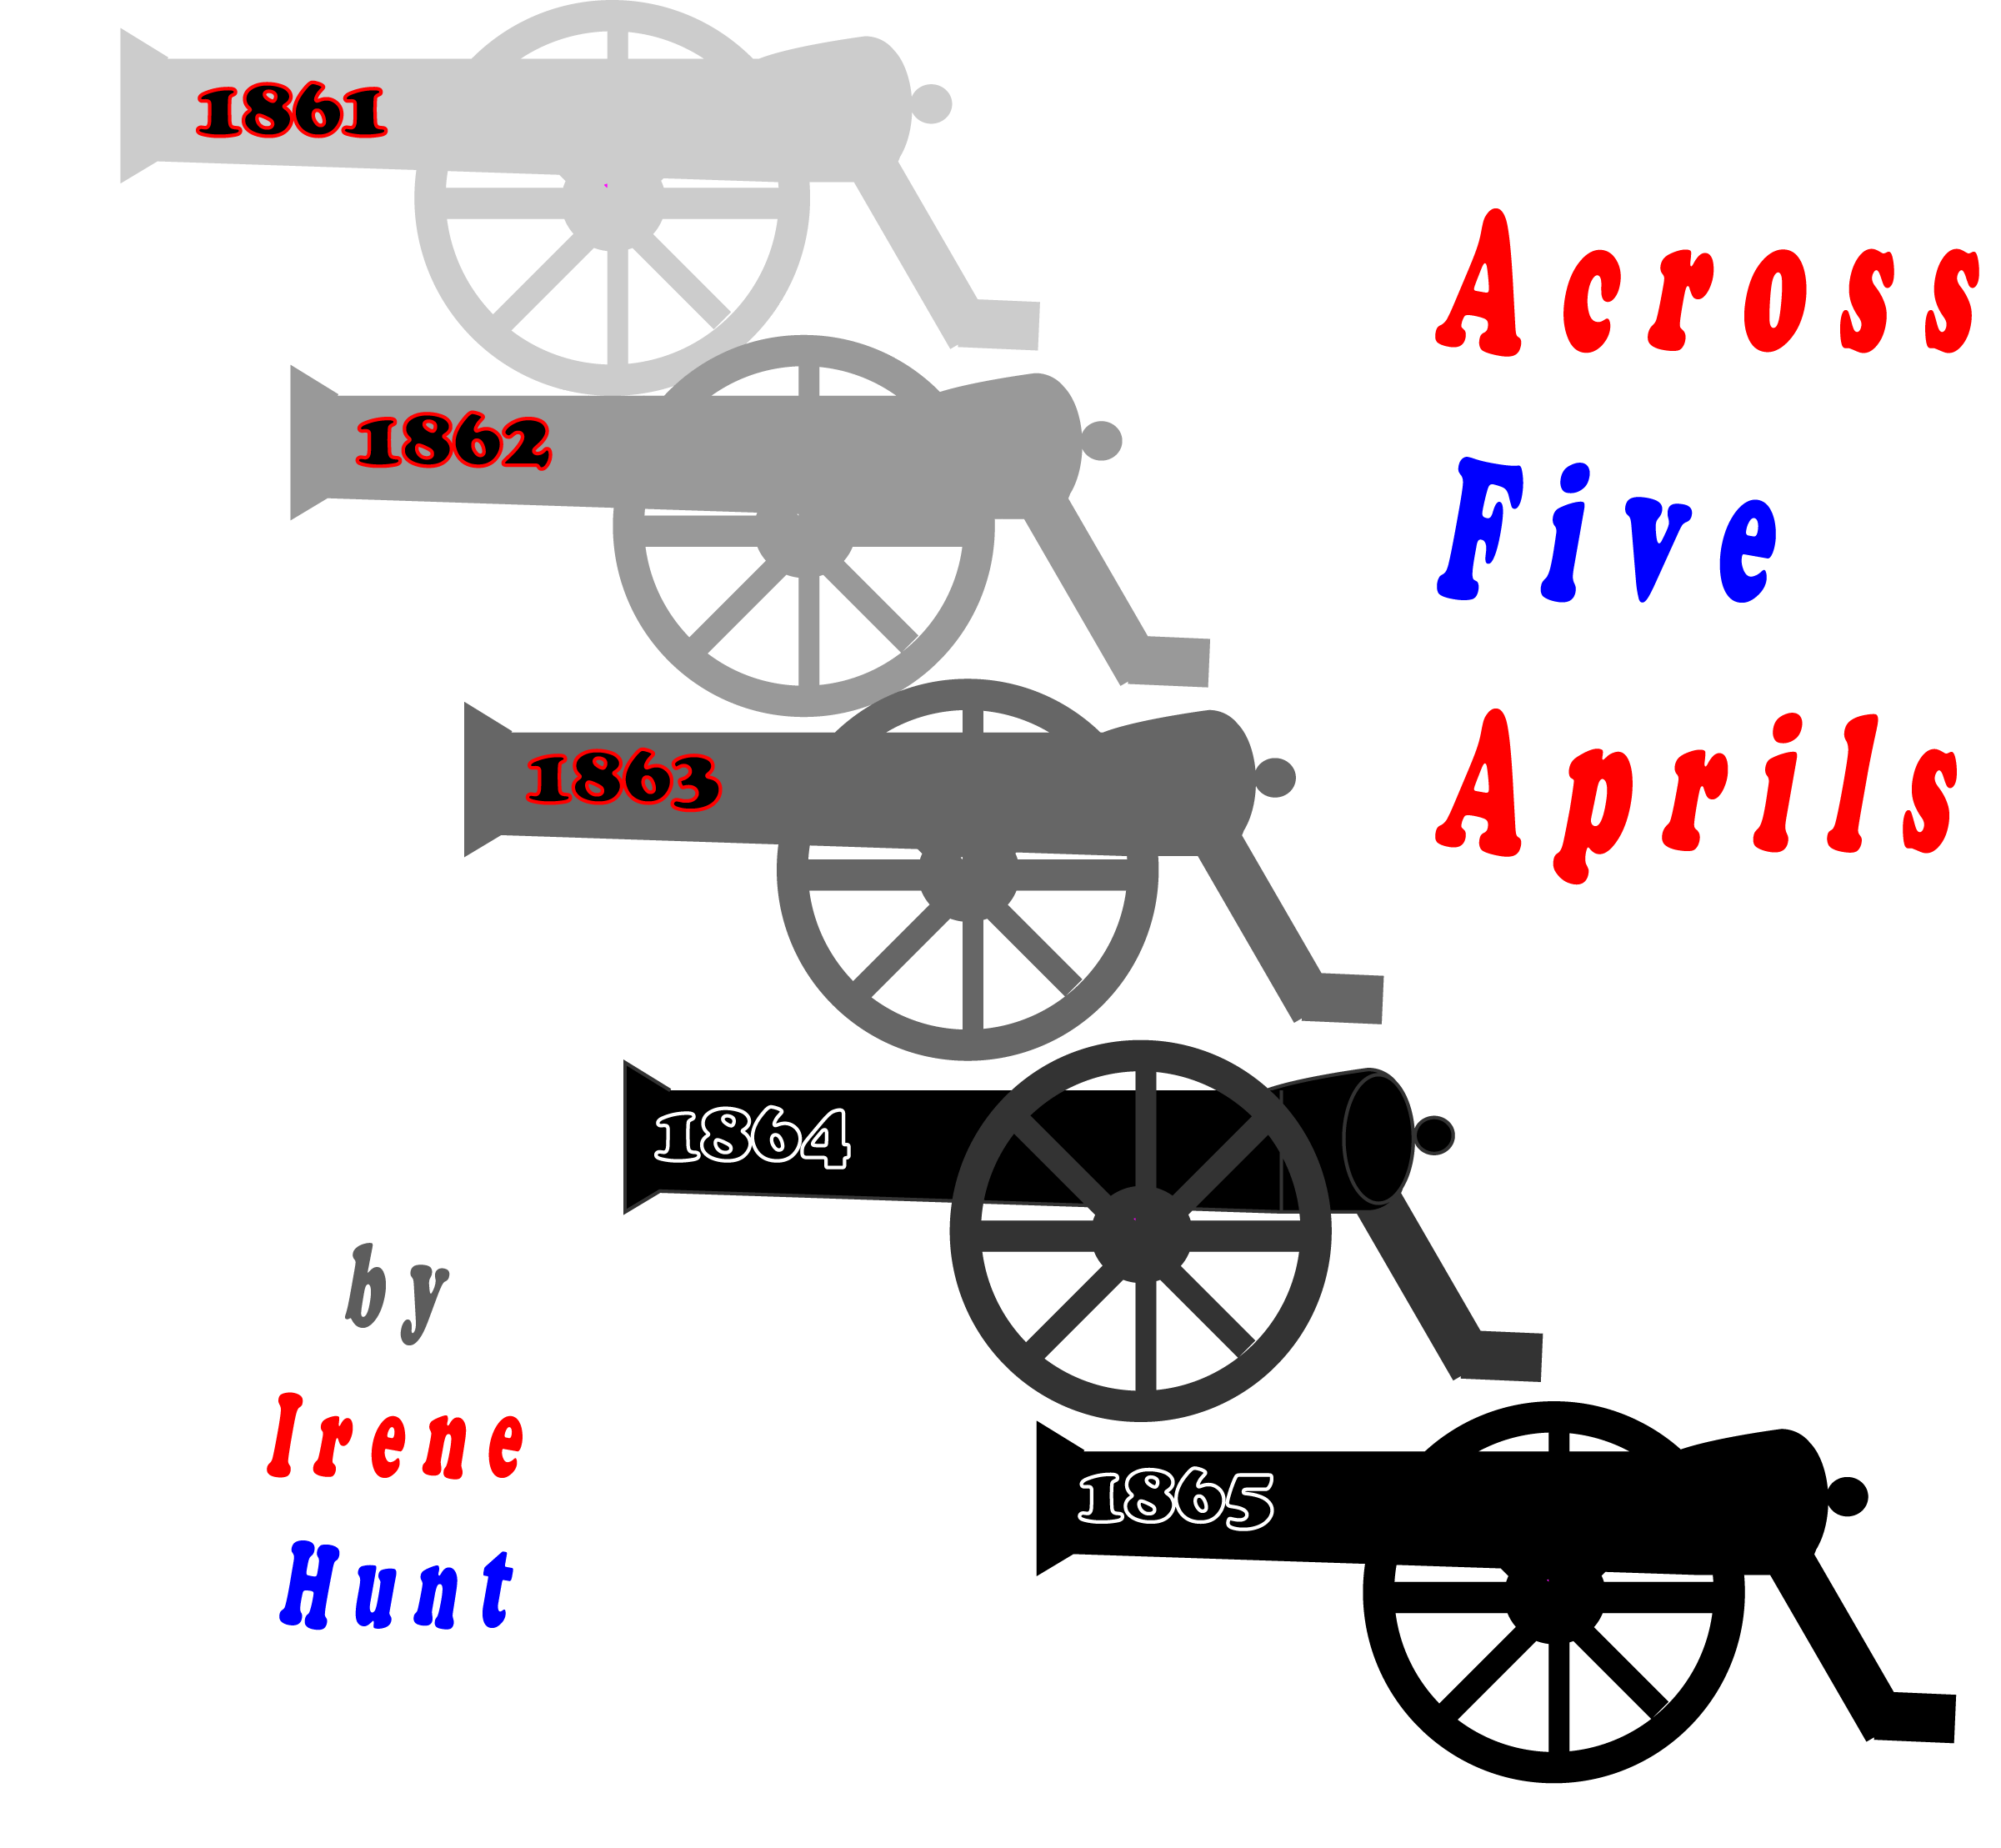 Across Five Aprils Cannon Timeline